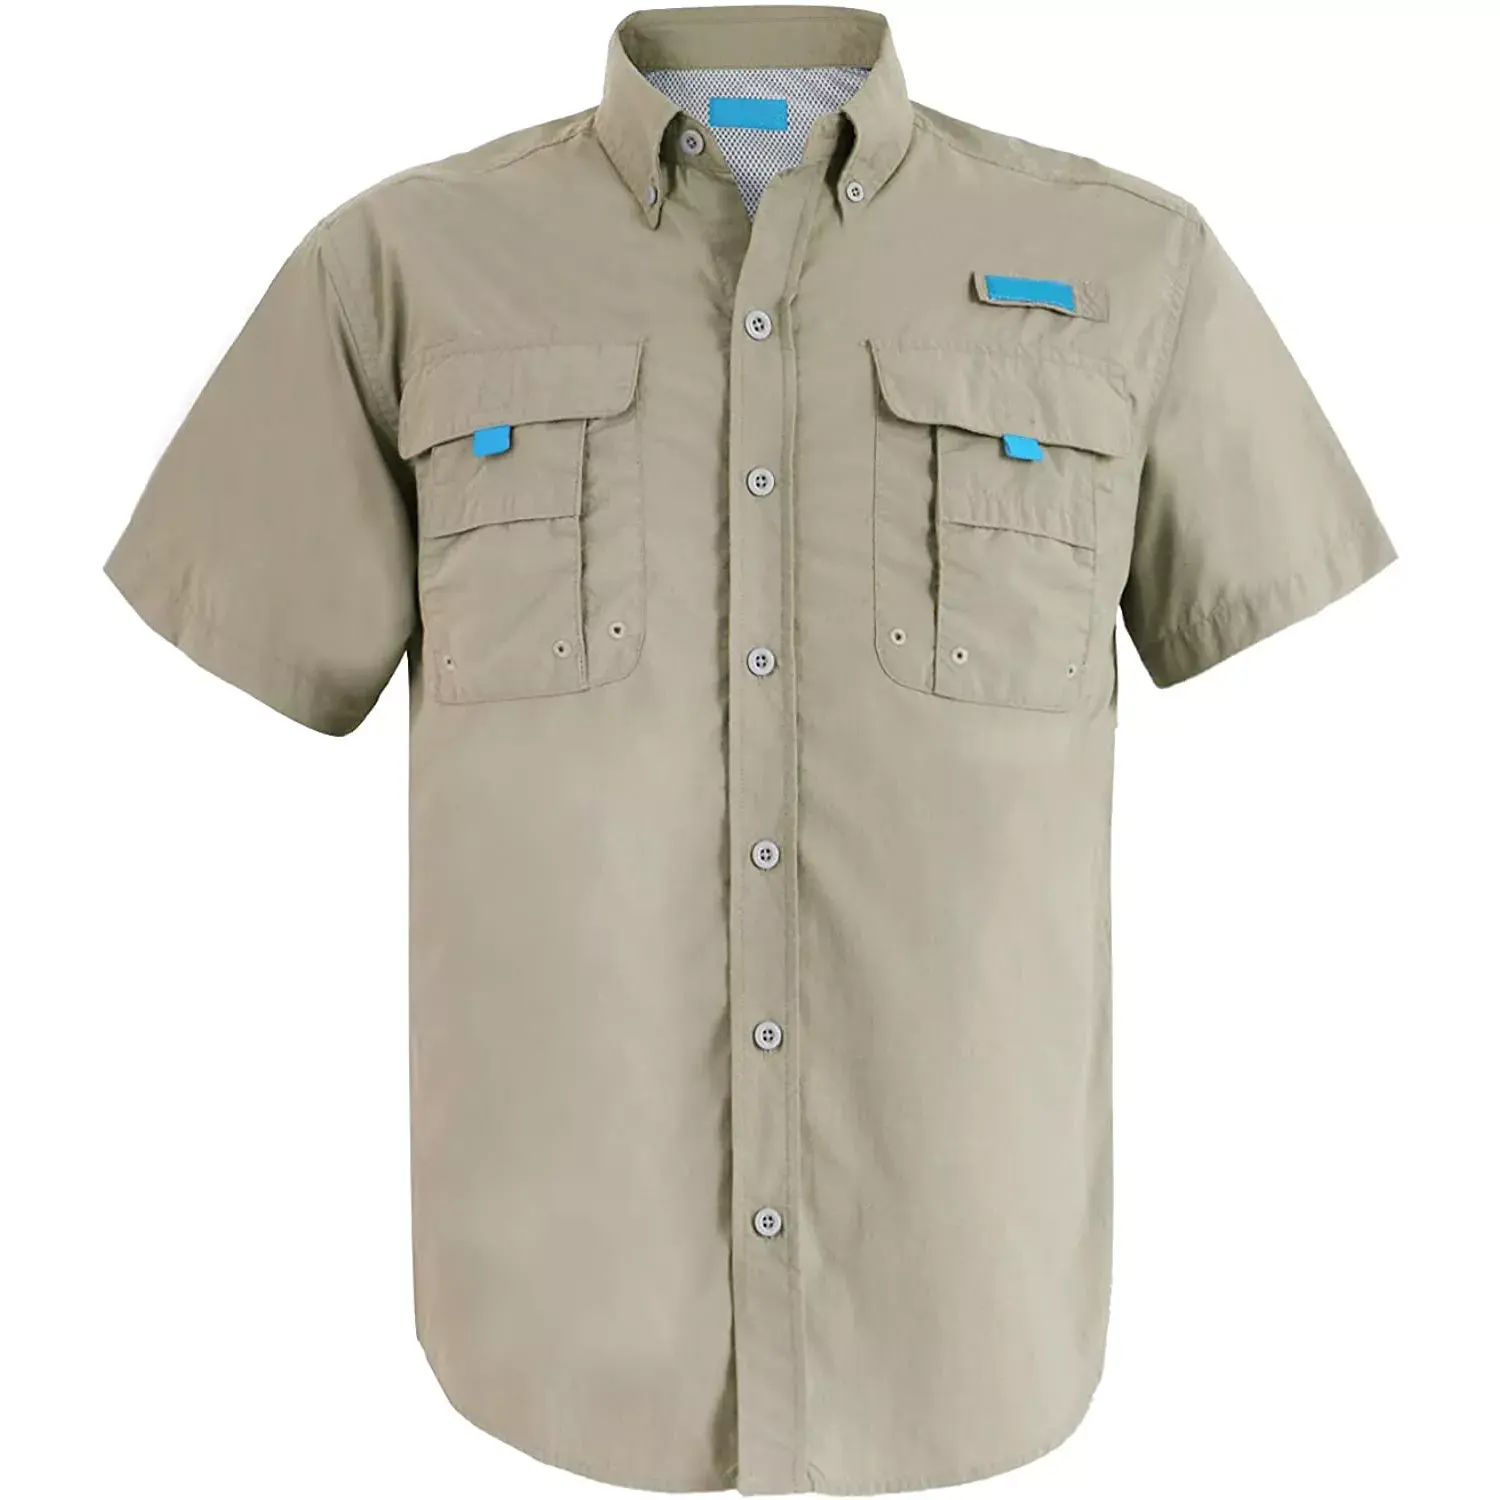 Оптовая продажа, ультрафиолетовая защита, быстросохнущие футболки на заказ, мужские футболки для рыбалки, мужские футболки для тренировок